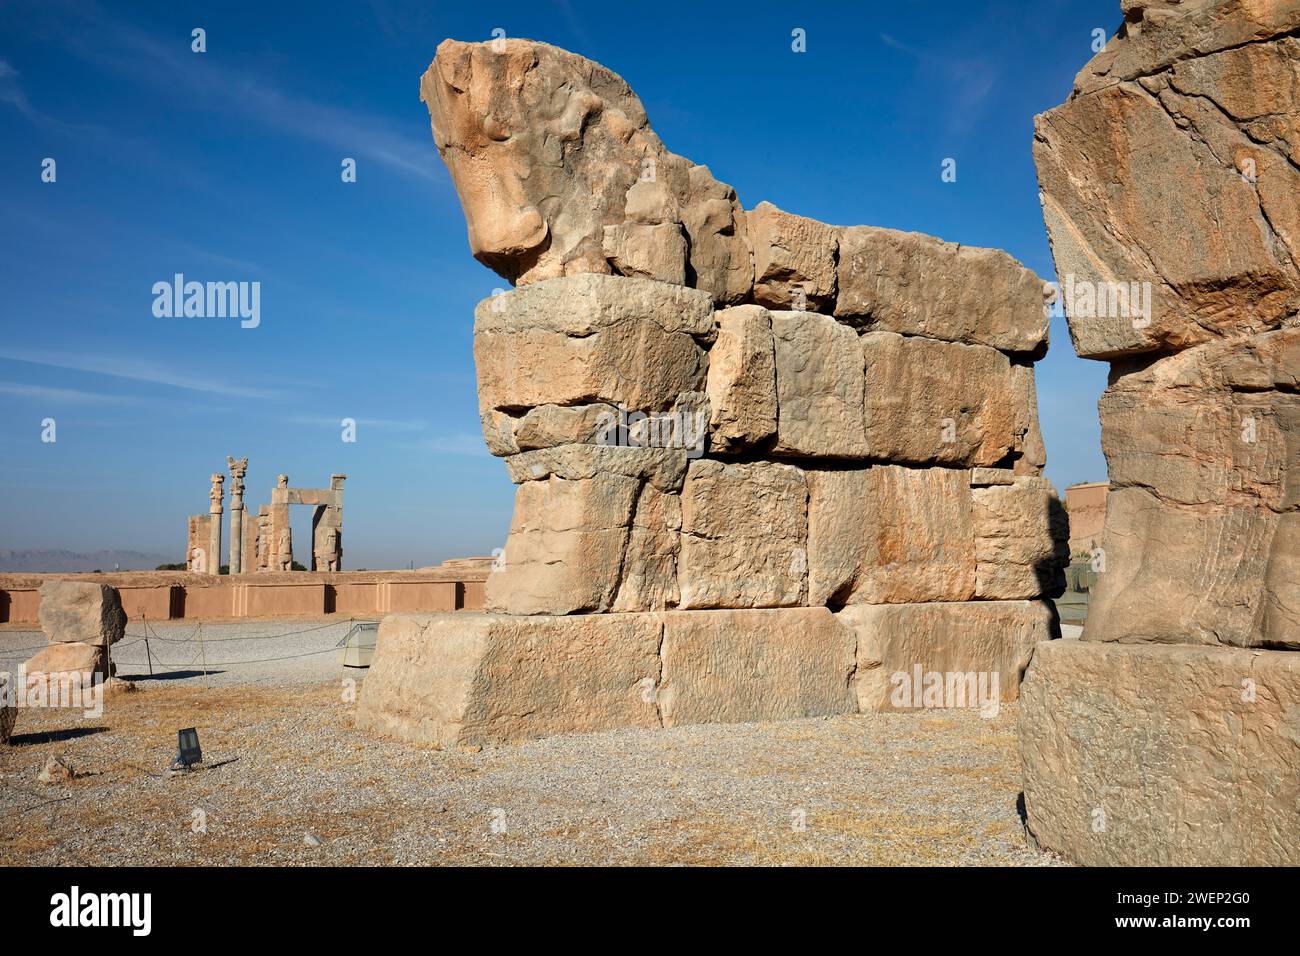 Enormi tori di pietra della porta incompiuta (detta anche porta dell'esercito) a Persepoli, capitale cerimoniale dell'Impero achemenide (550–330 a.C.), Iran. Foto Stock